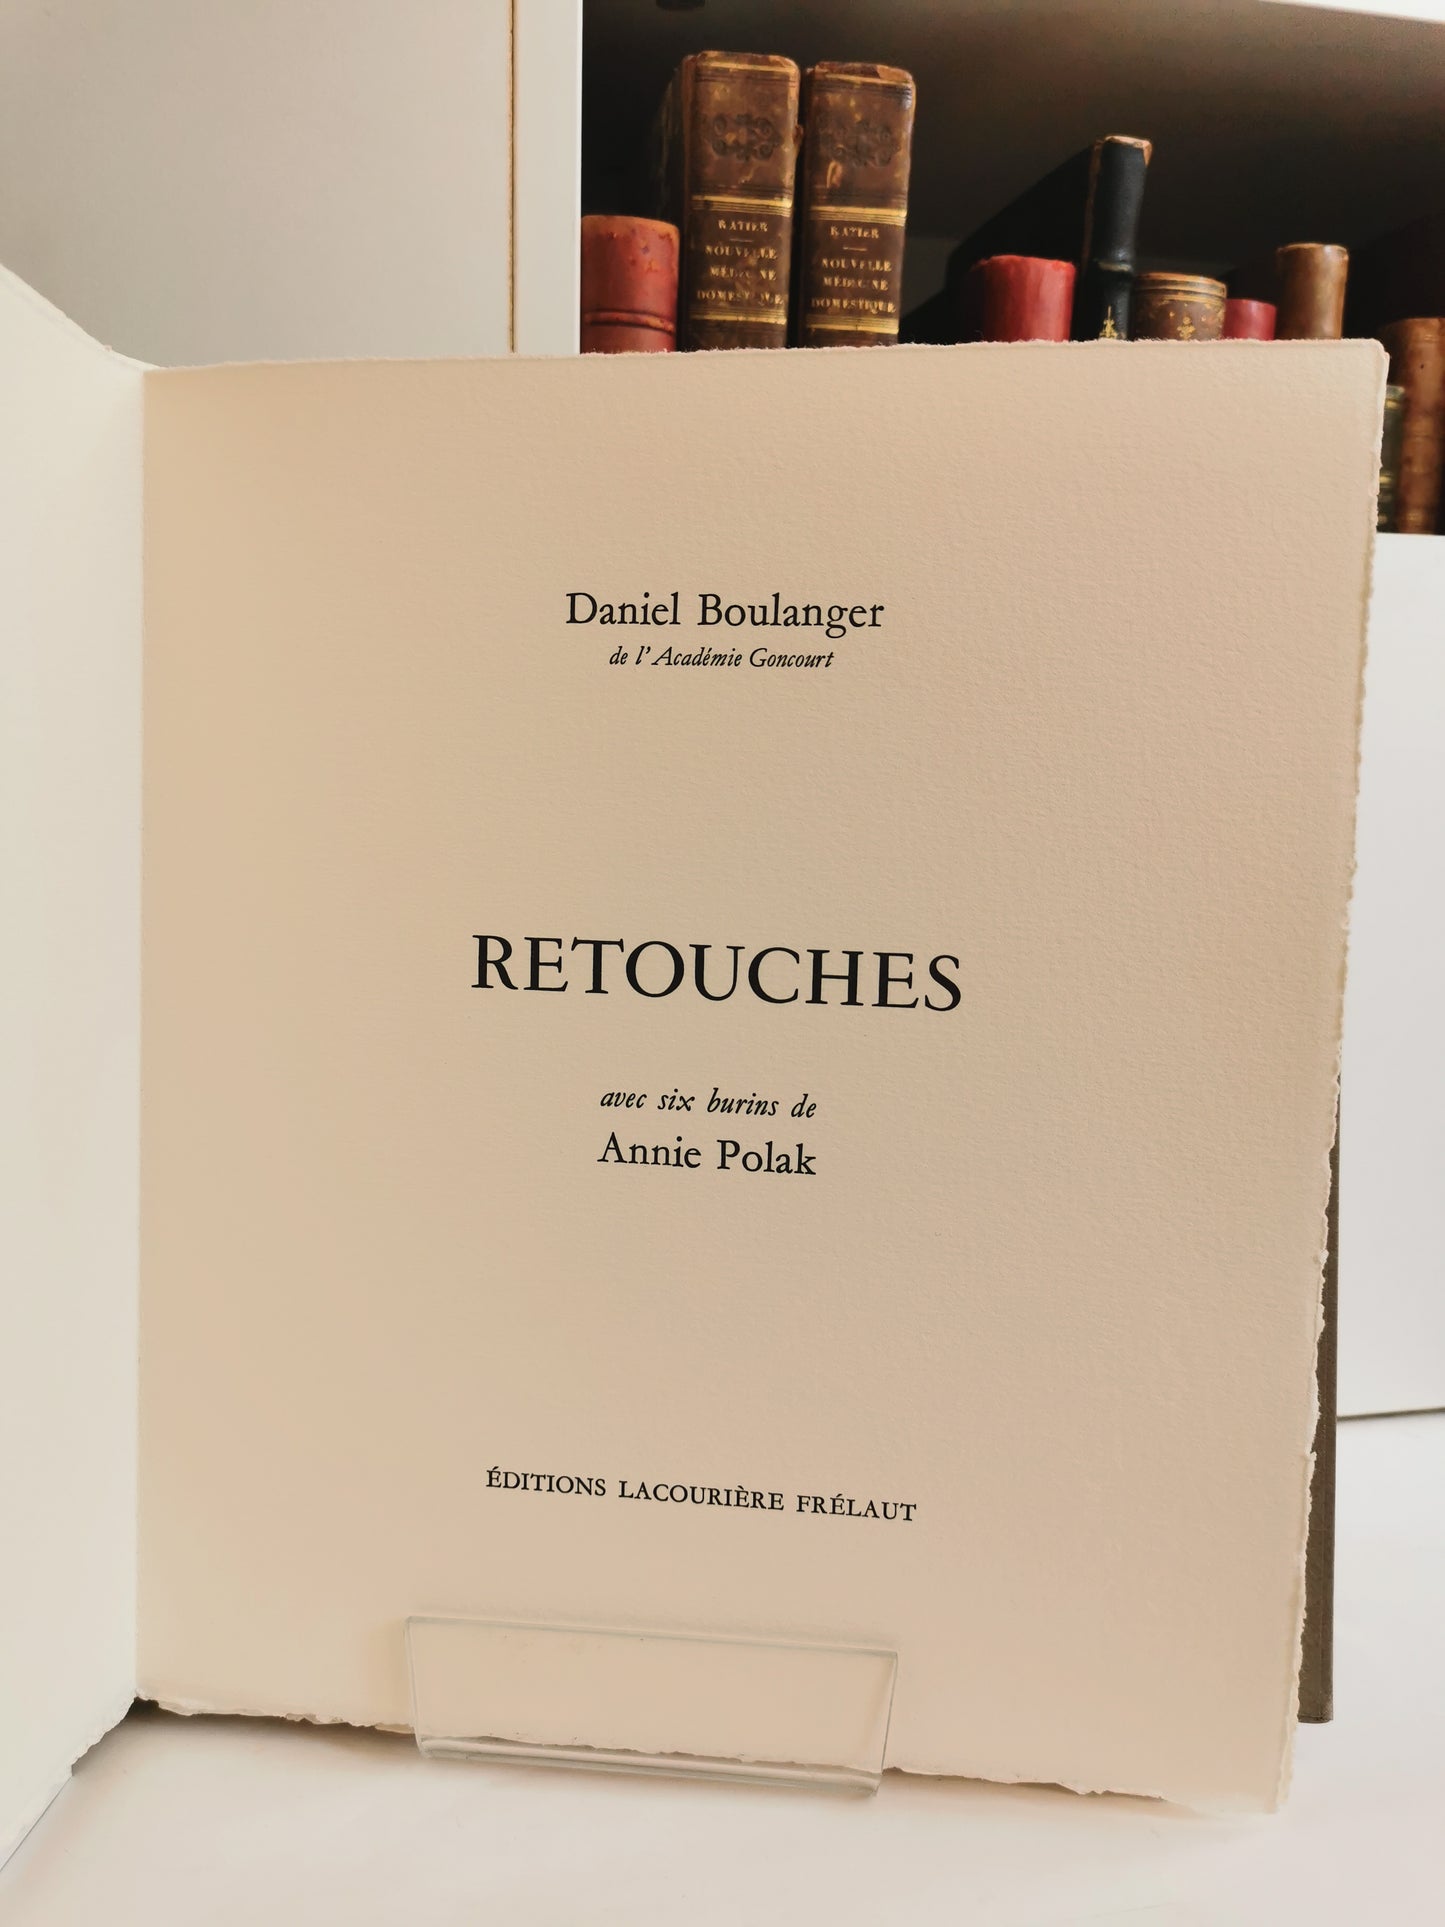 Retouches, Daniel Boulanger, avec six burins de Annie Polak, Editions Lacourière Frélaut, 1996.